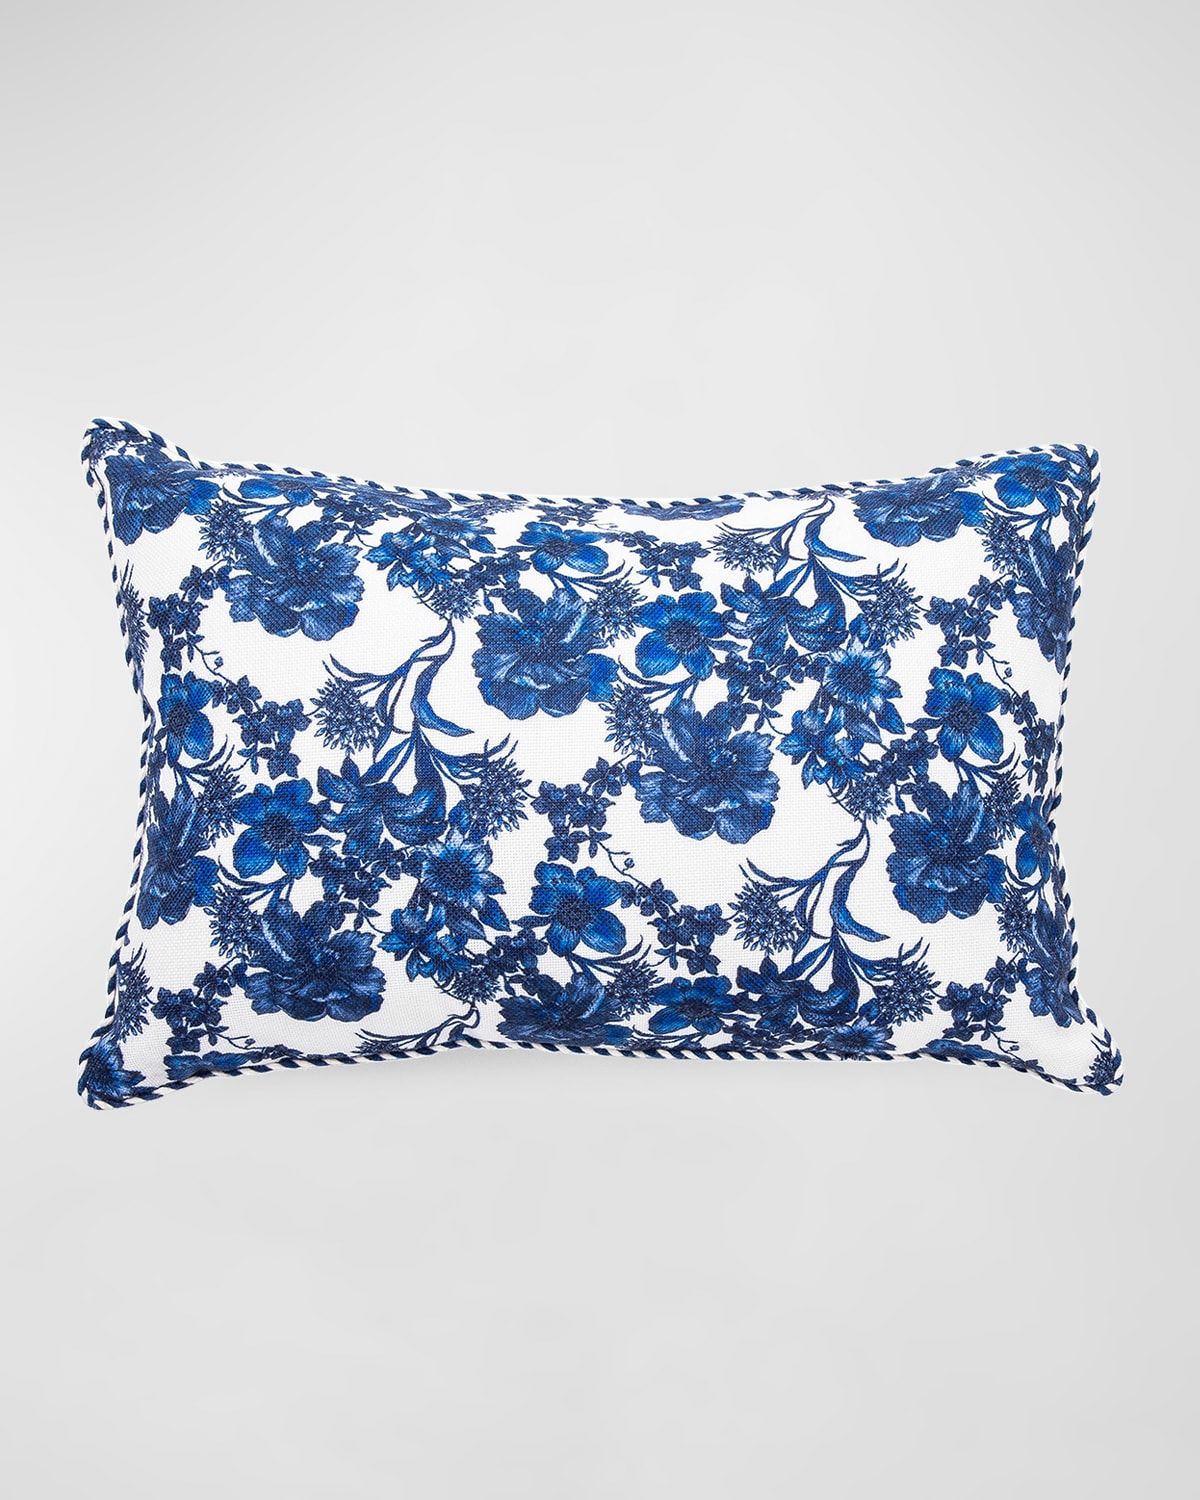 Mackenzie-childs English Garden Outdoor Lumbar Pillow In Blue